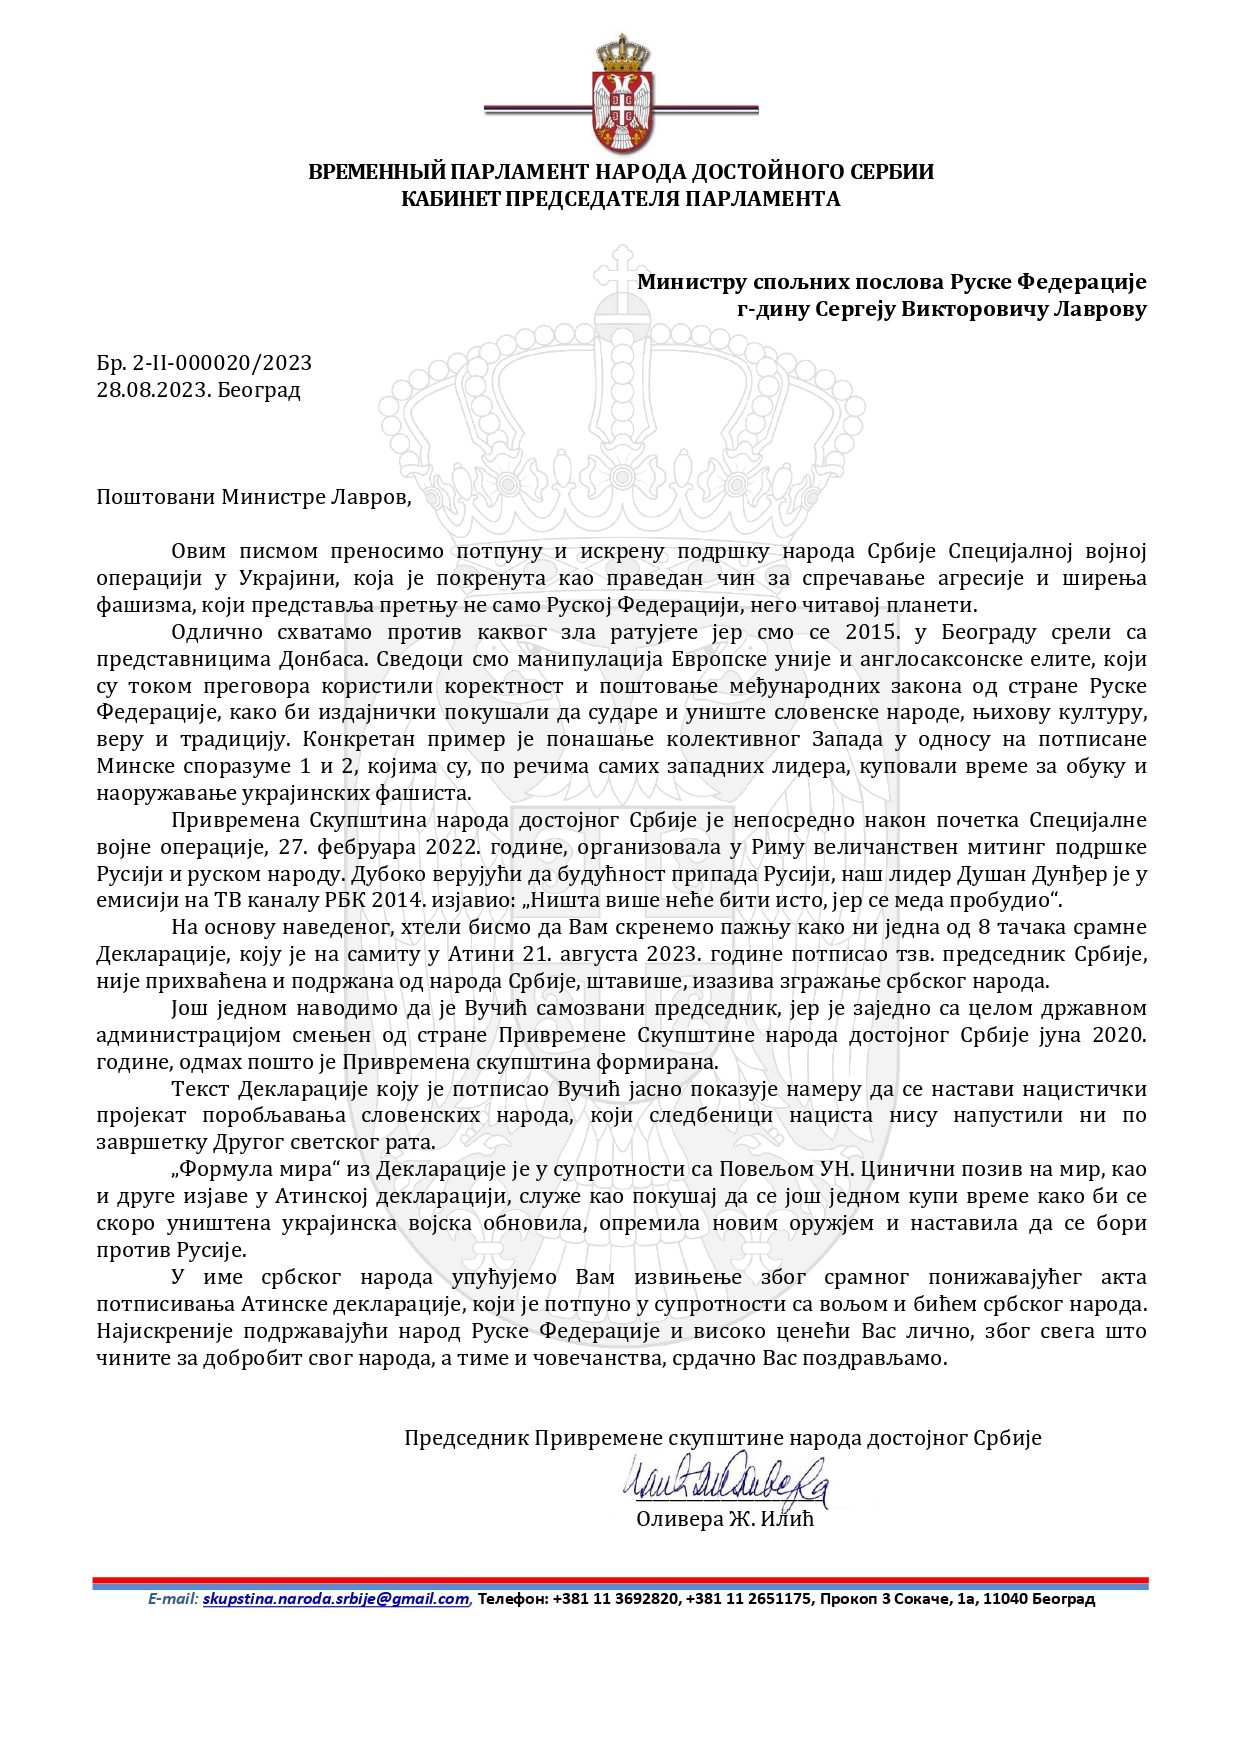 Допис Број 2-II-000020/2023 Министру спољних послова Руске Федерације, г. Лаврову